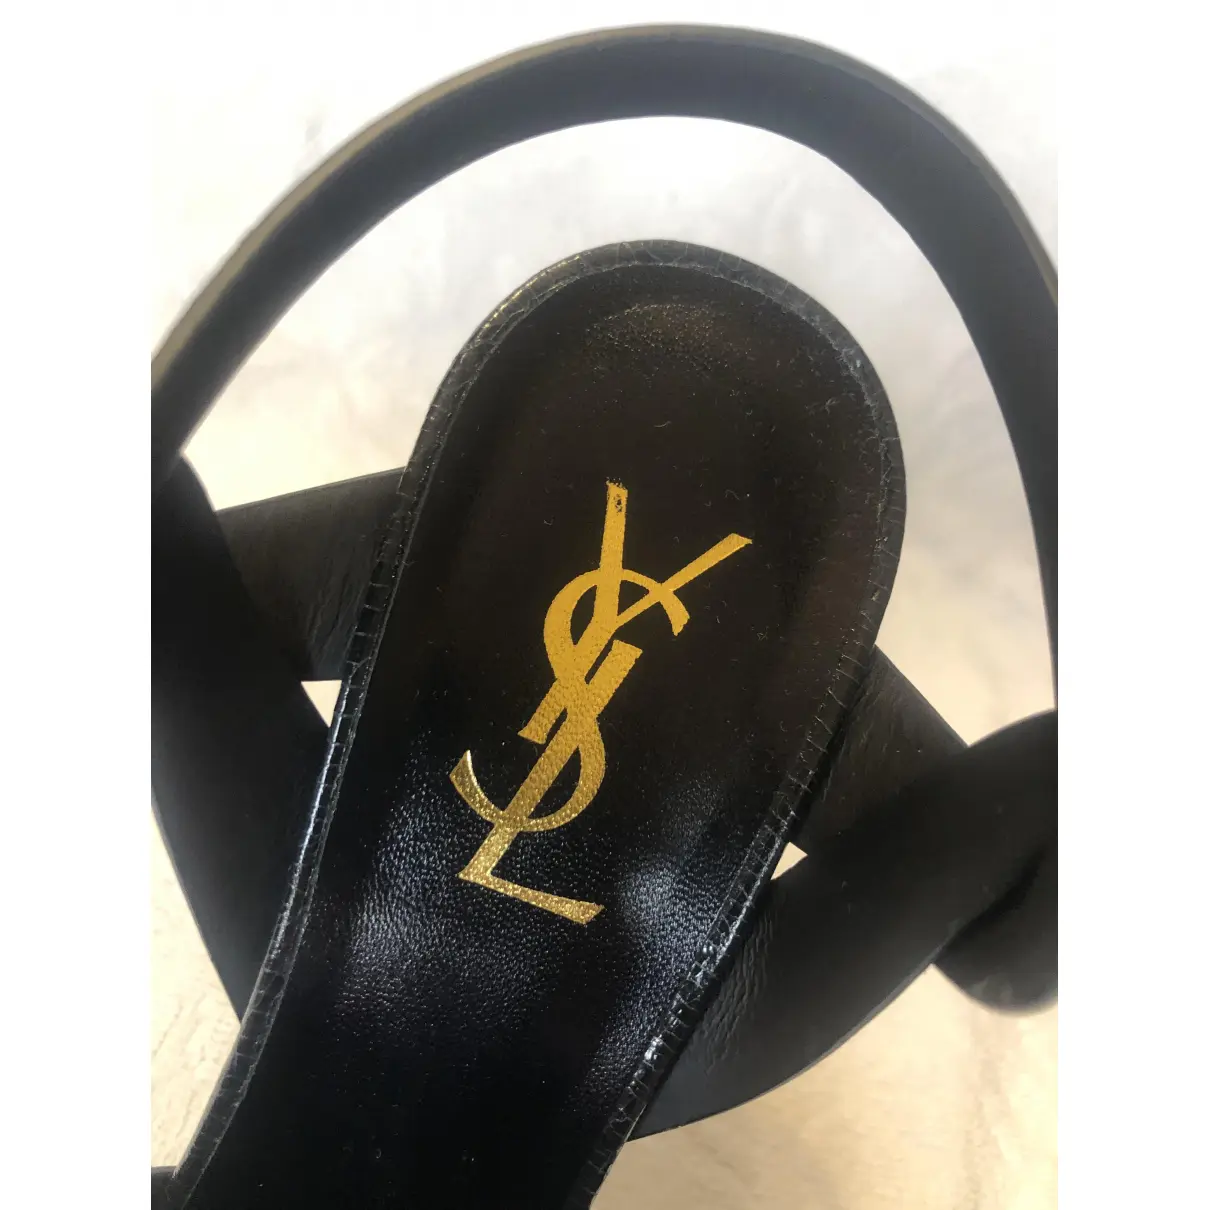 Tribute patent leather sandal Saint Laurent